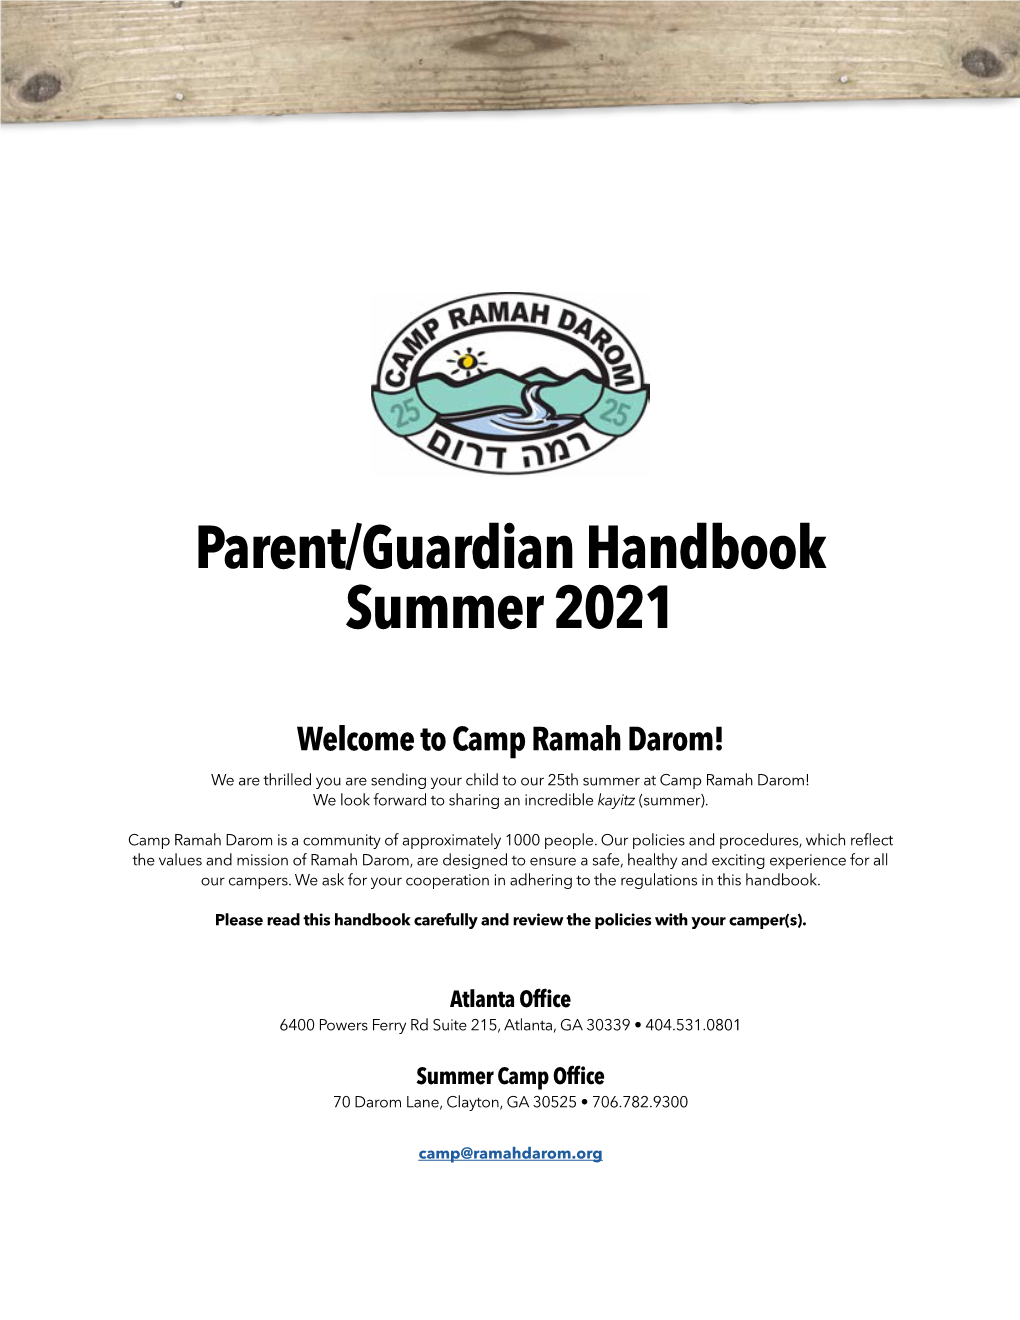 Parent/Guardian Handbook Summer 2021